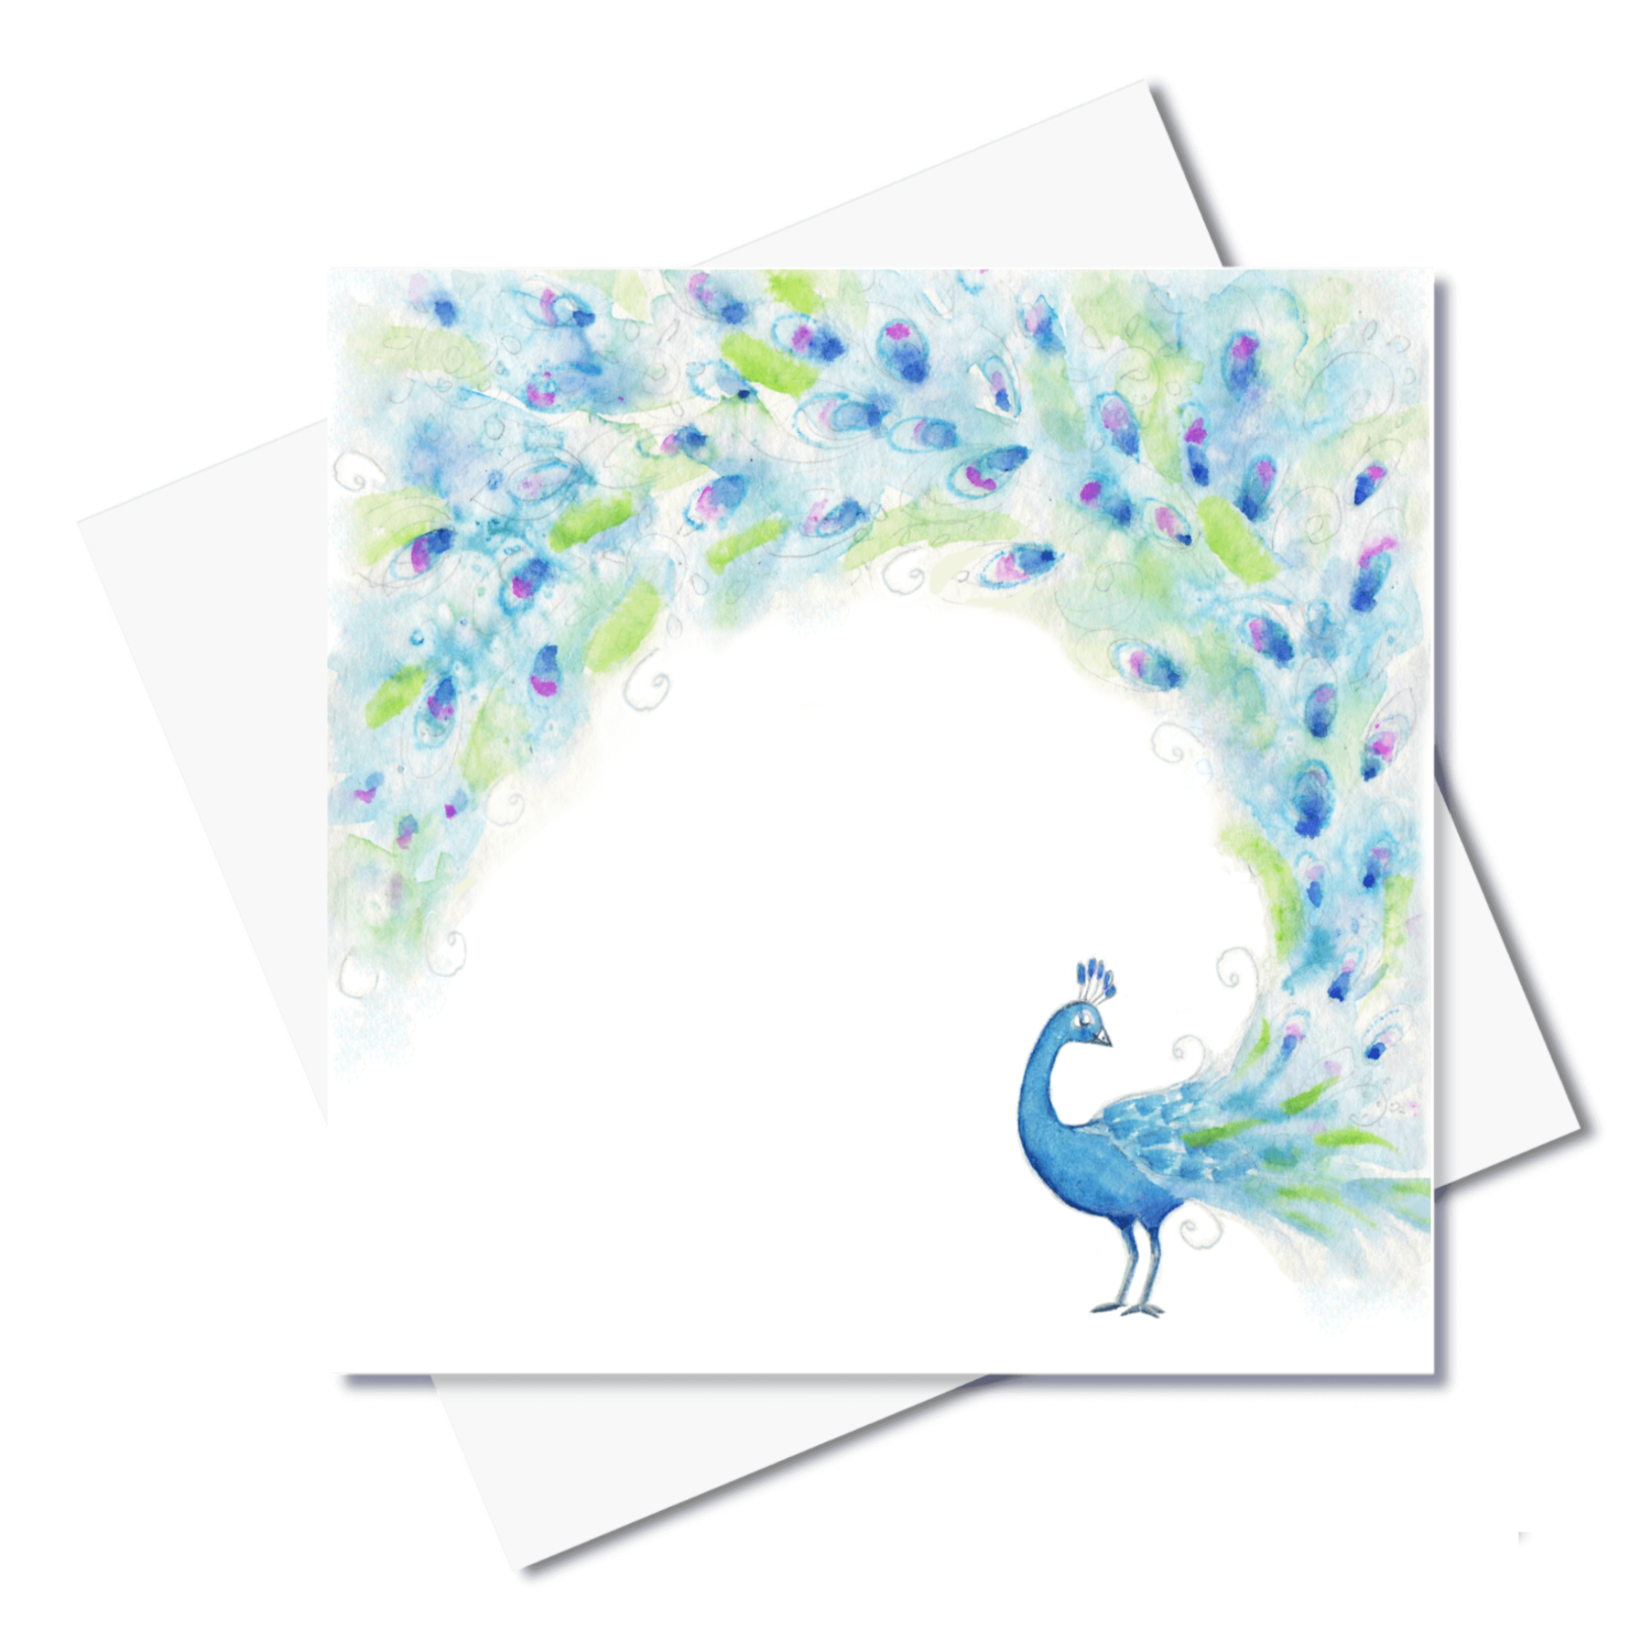 J. Callaway Designs Peacock Greeting Card